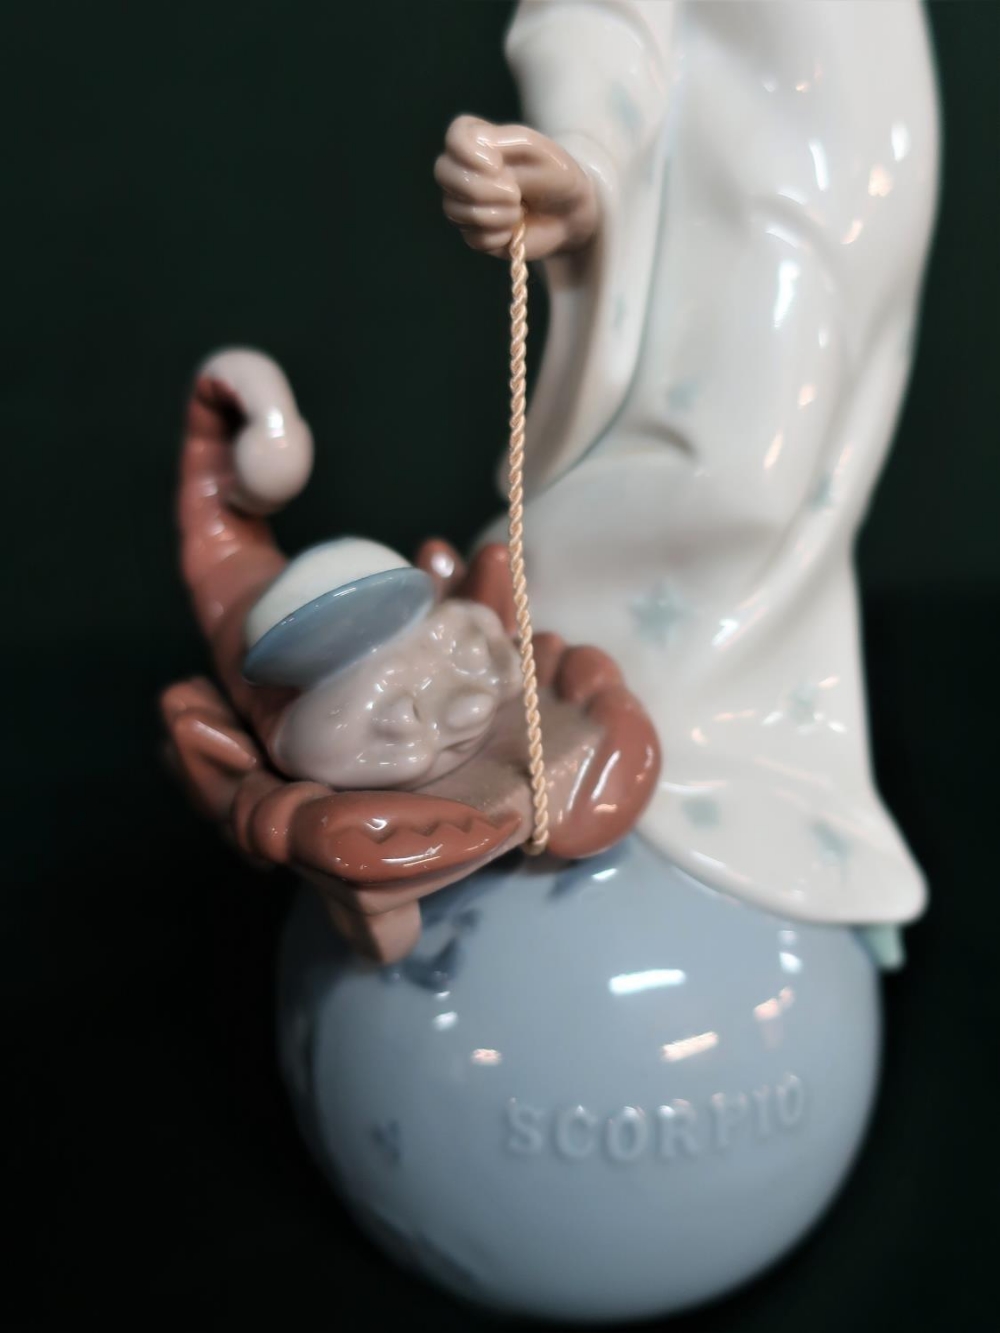 Lladro figurine 6225 "Scorpio" in original box, H28cm. - Image 3 of 3